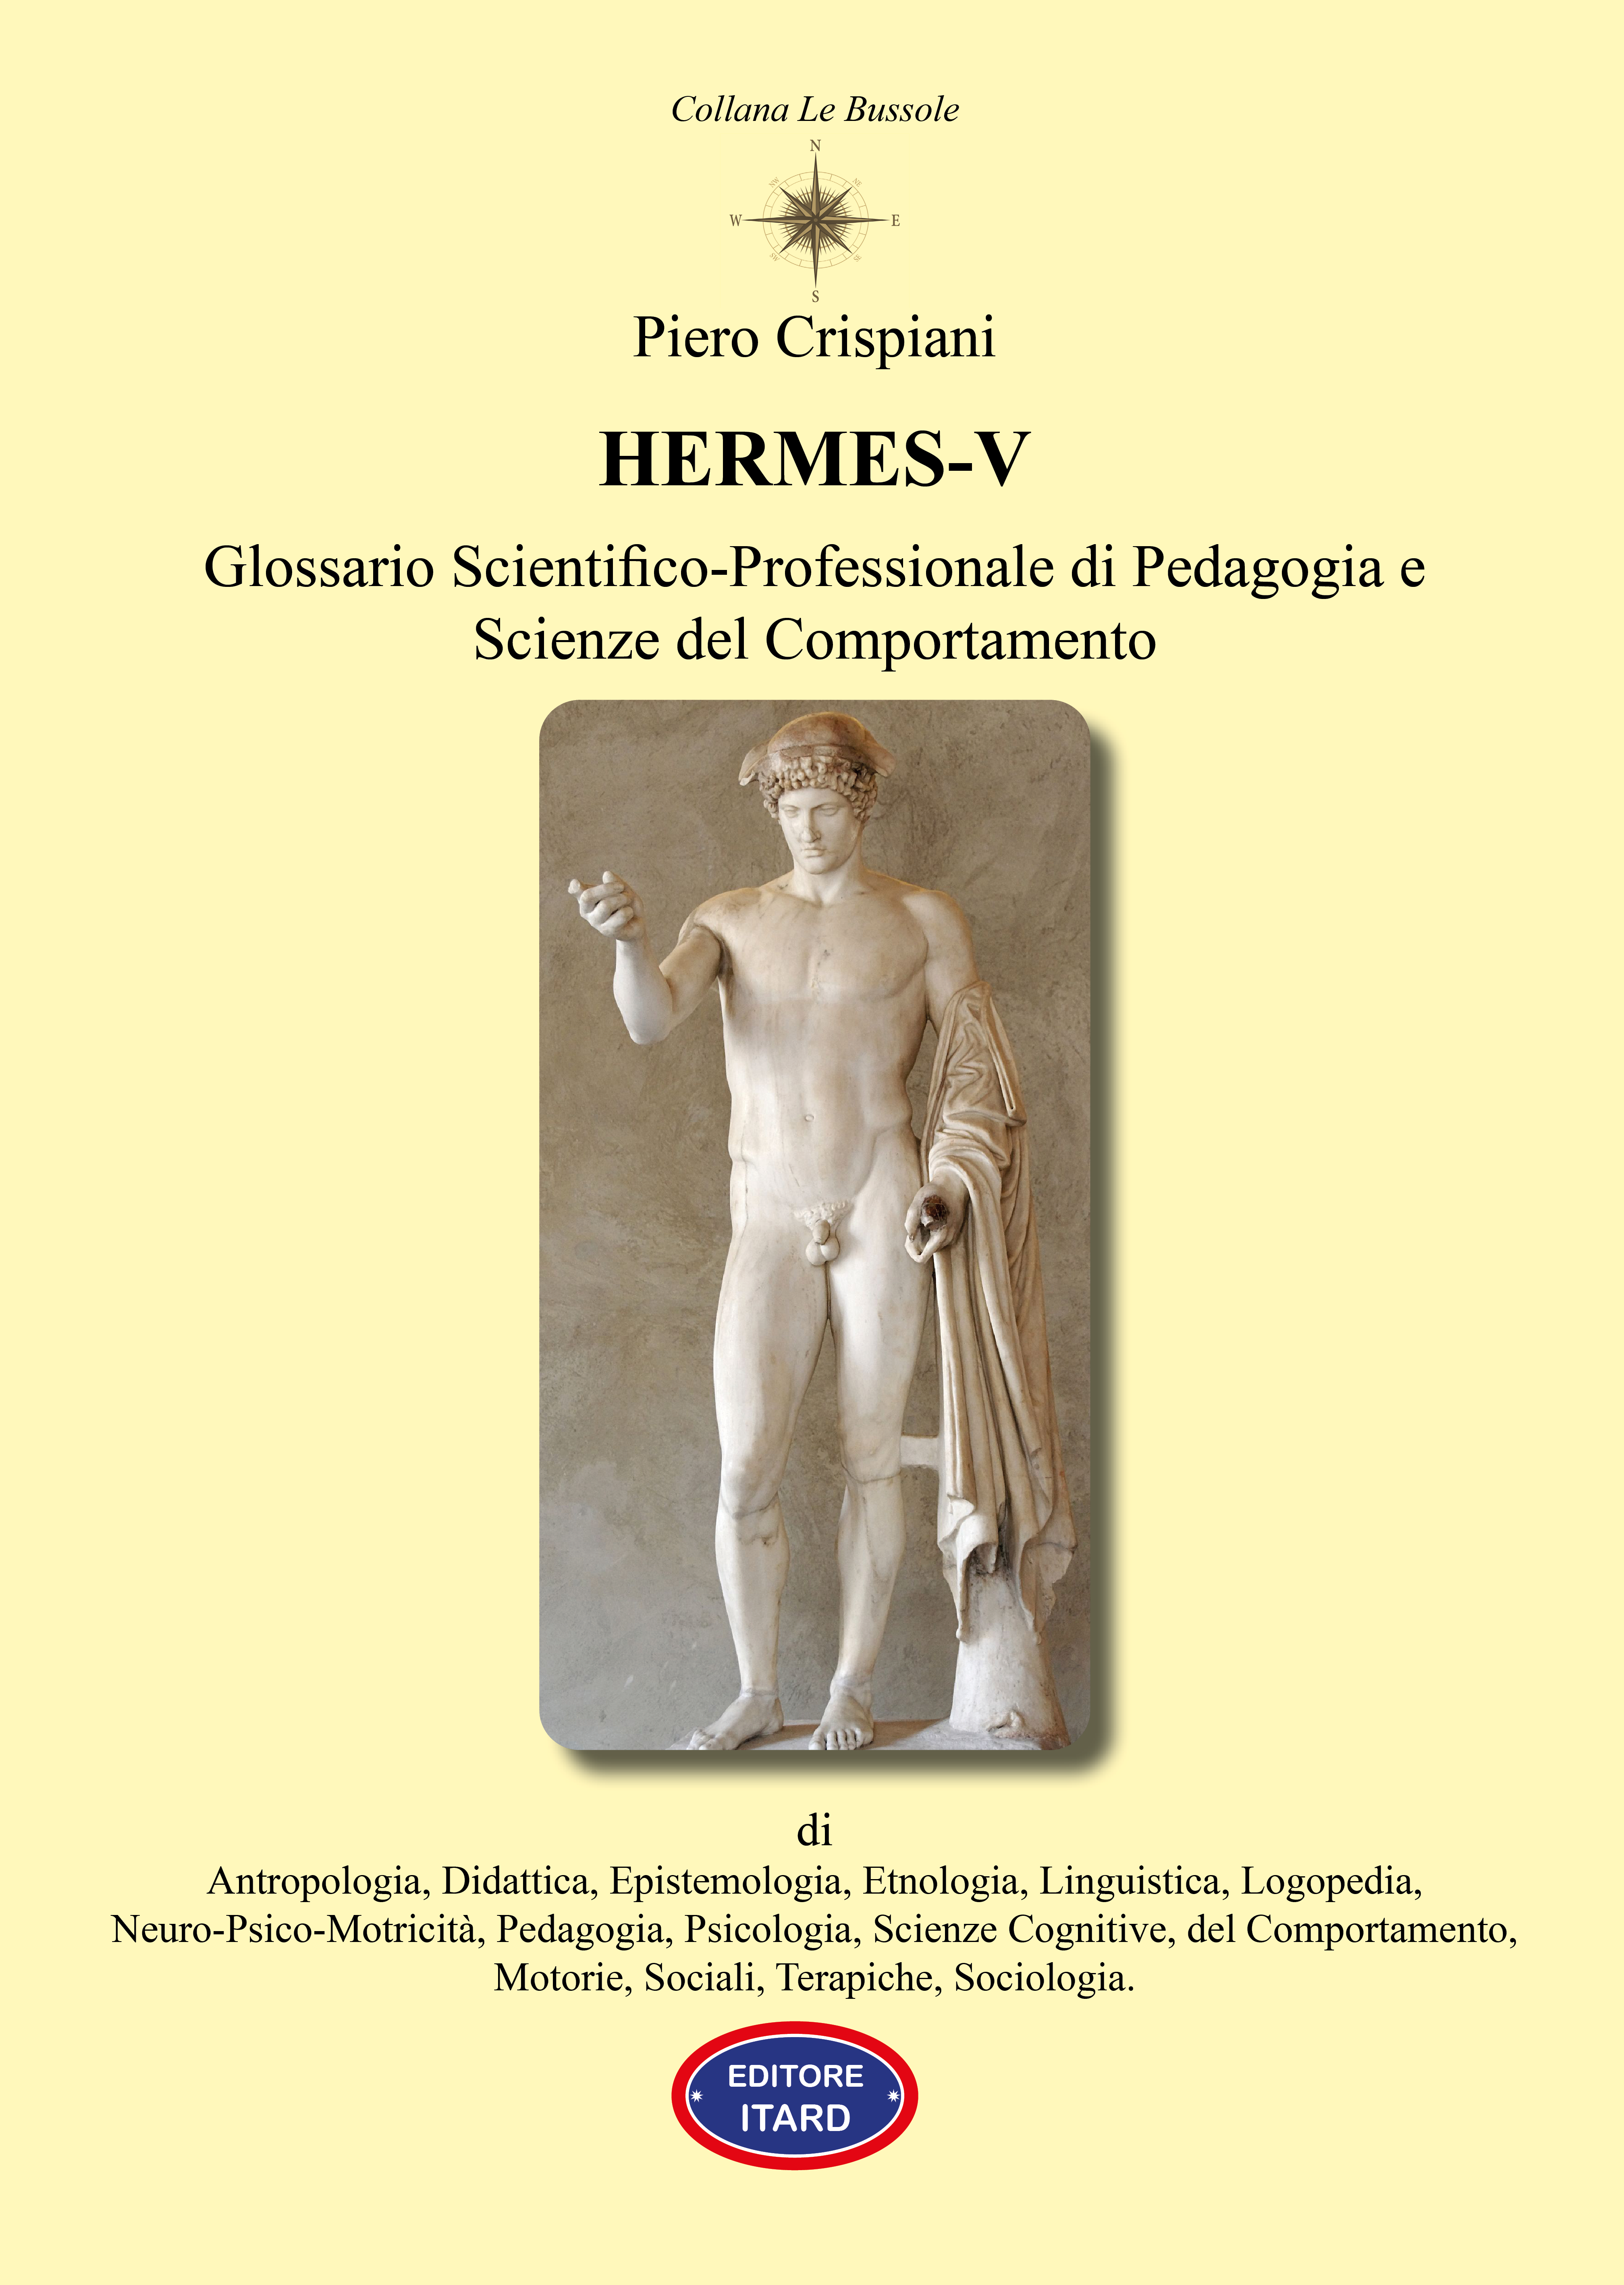 Hermes-V - Glossario Scientifico-Professionale di Pedagogia e Scienze del Comportamento